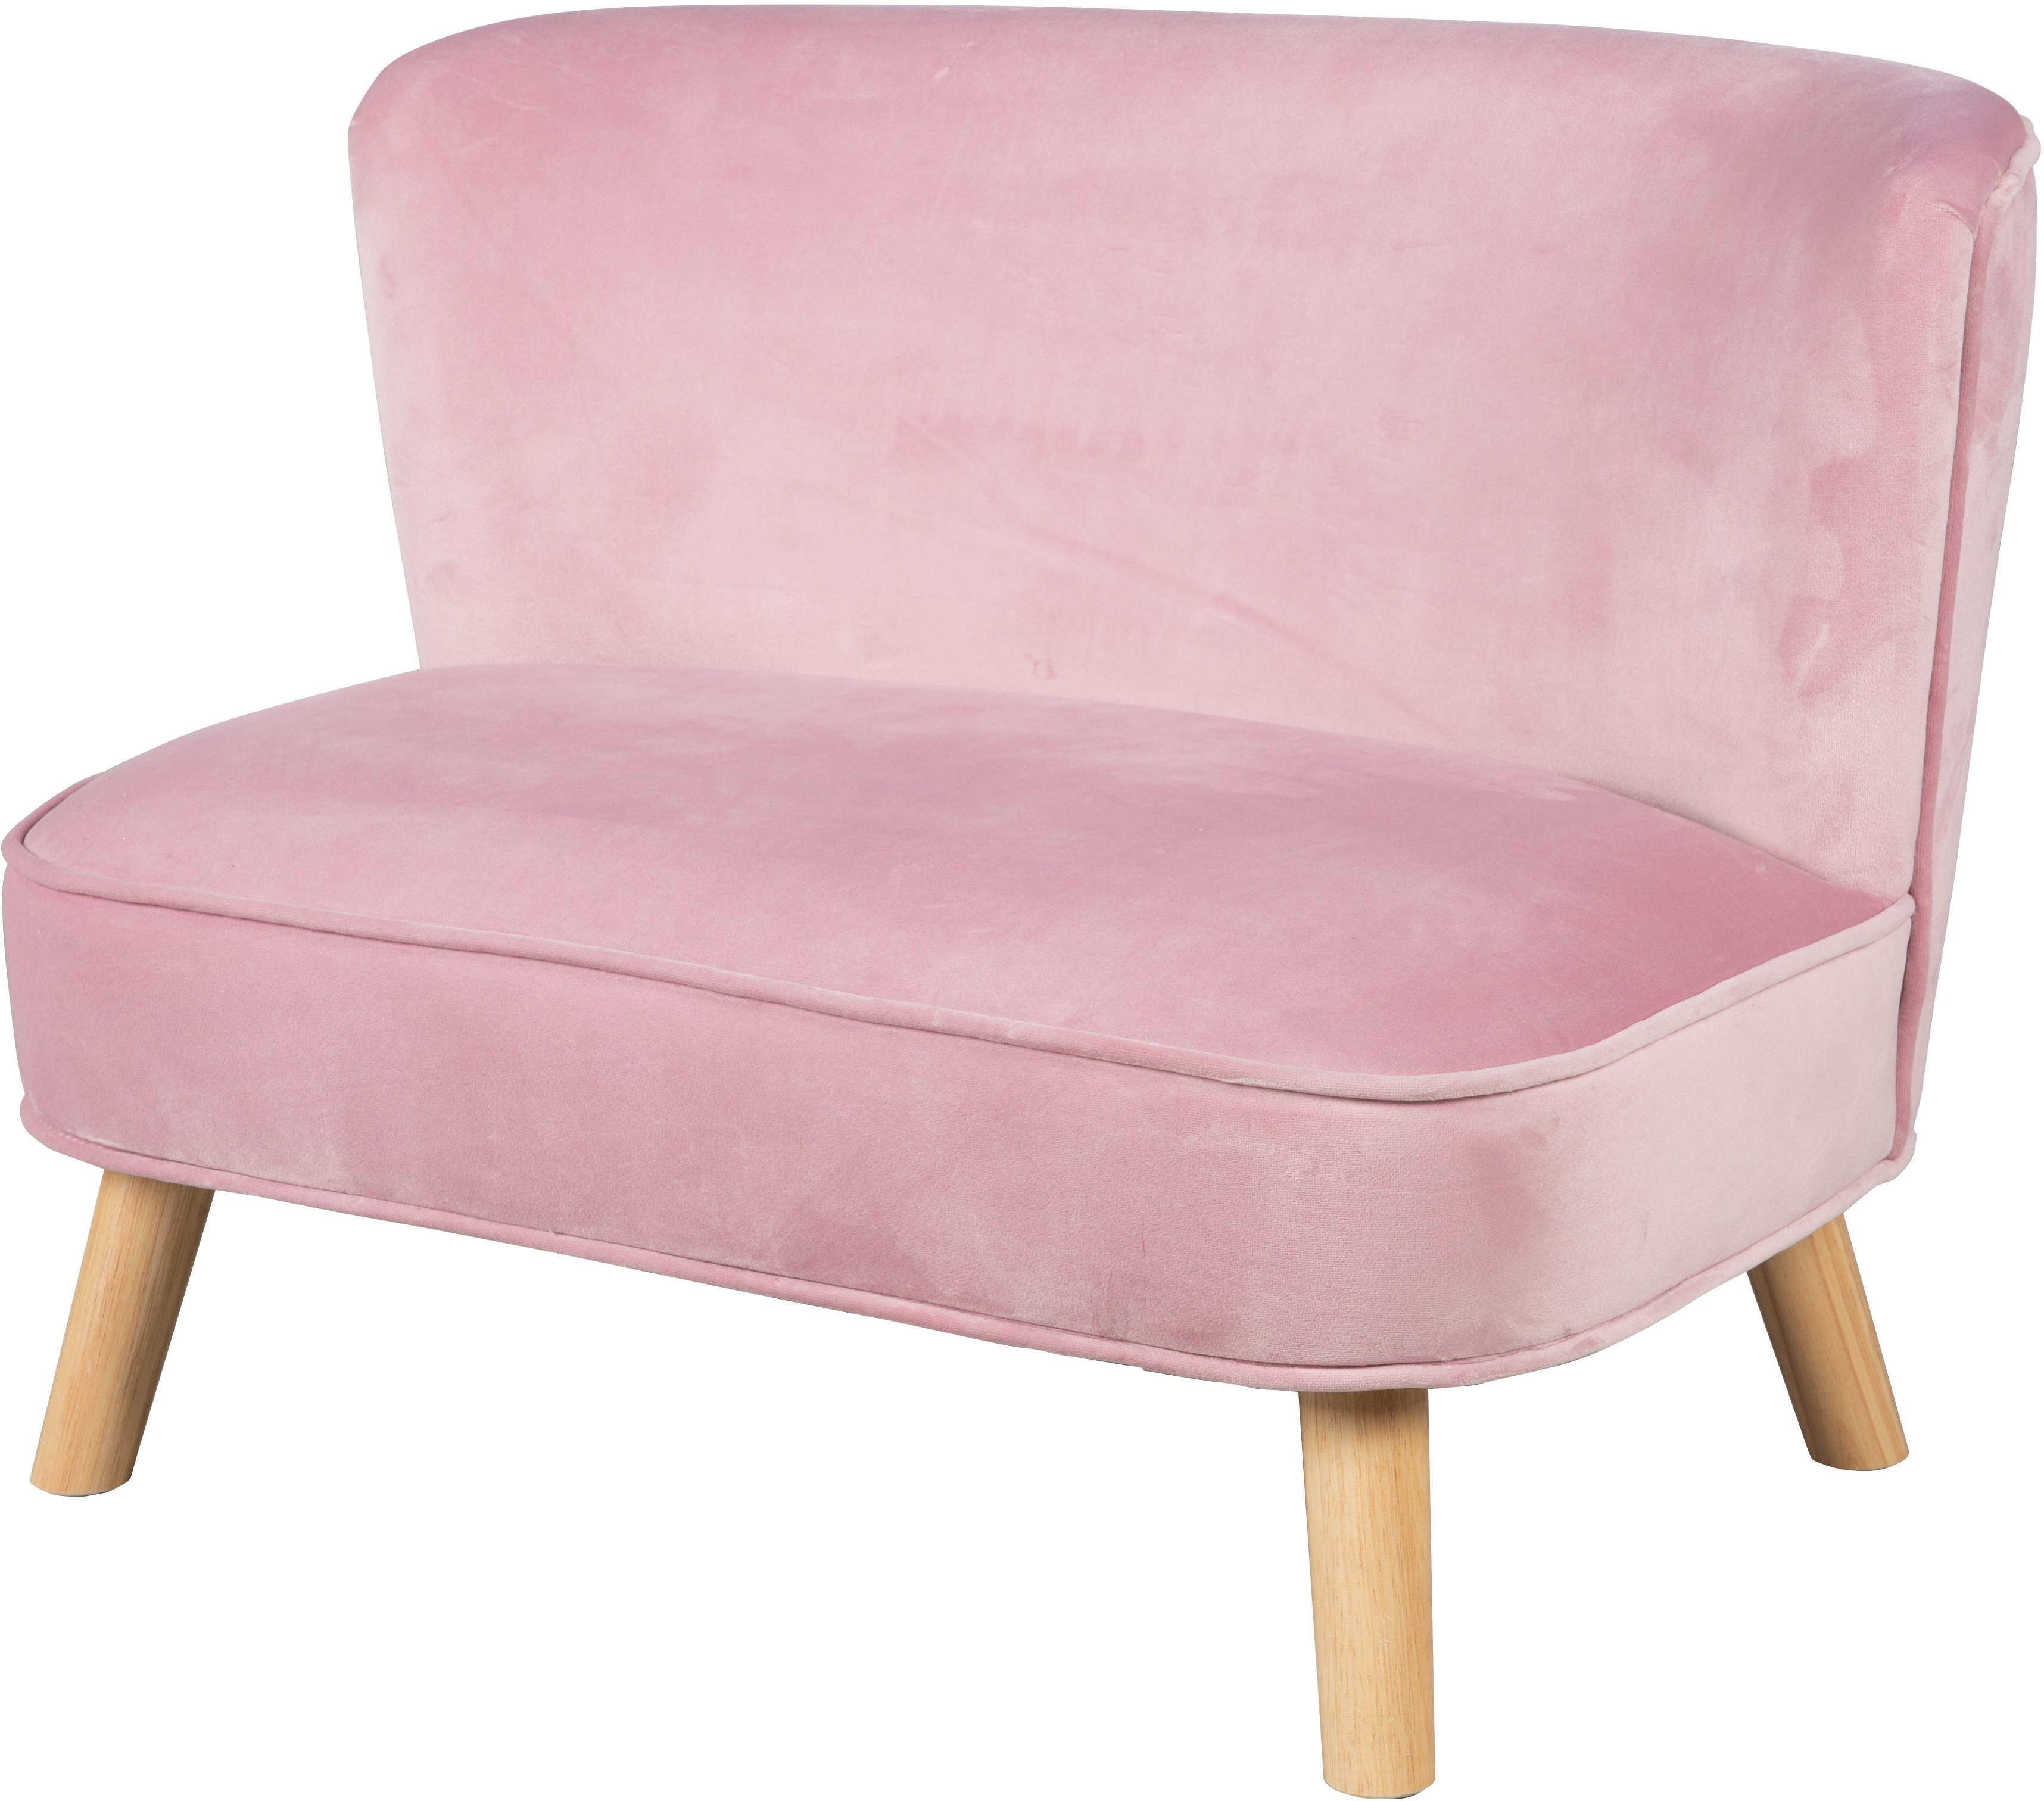 Lil Sofa, roba® rosa/mauve Sofa mit Holzfüßen